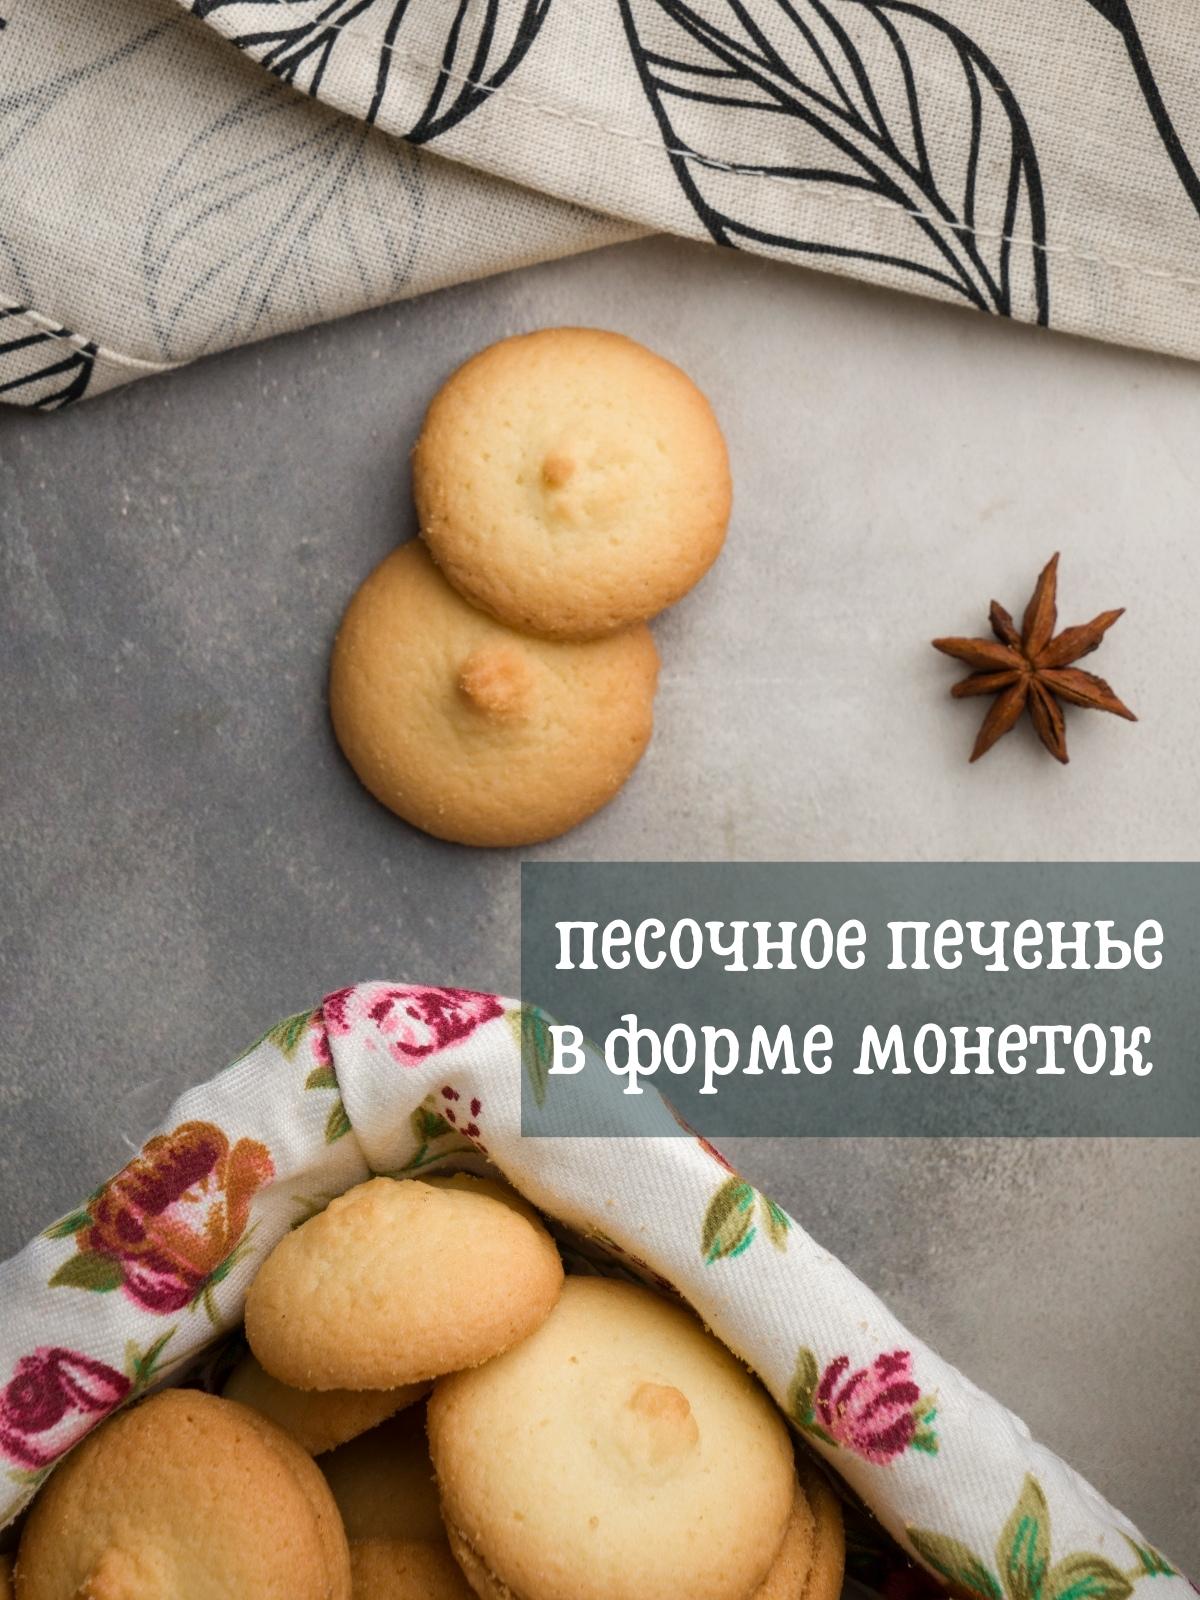 Русское чайное печенье - вкусный рецепт с пошаговым фото